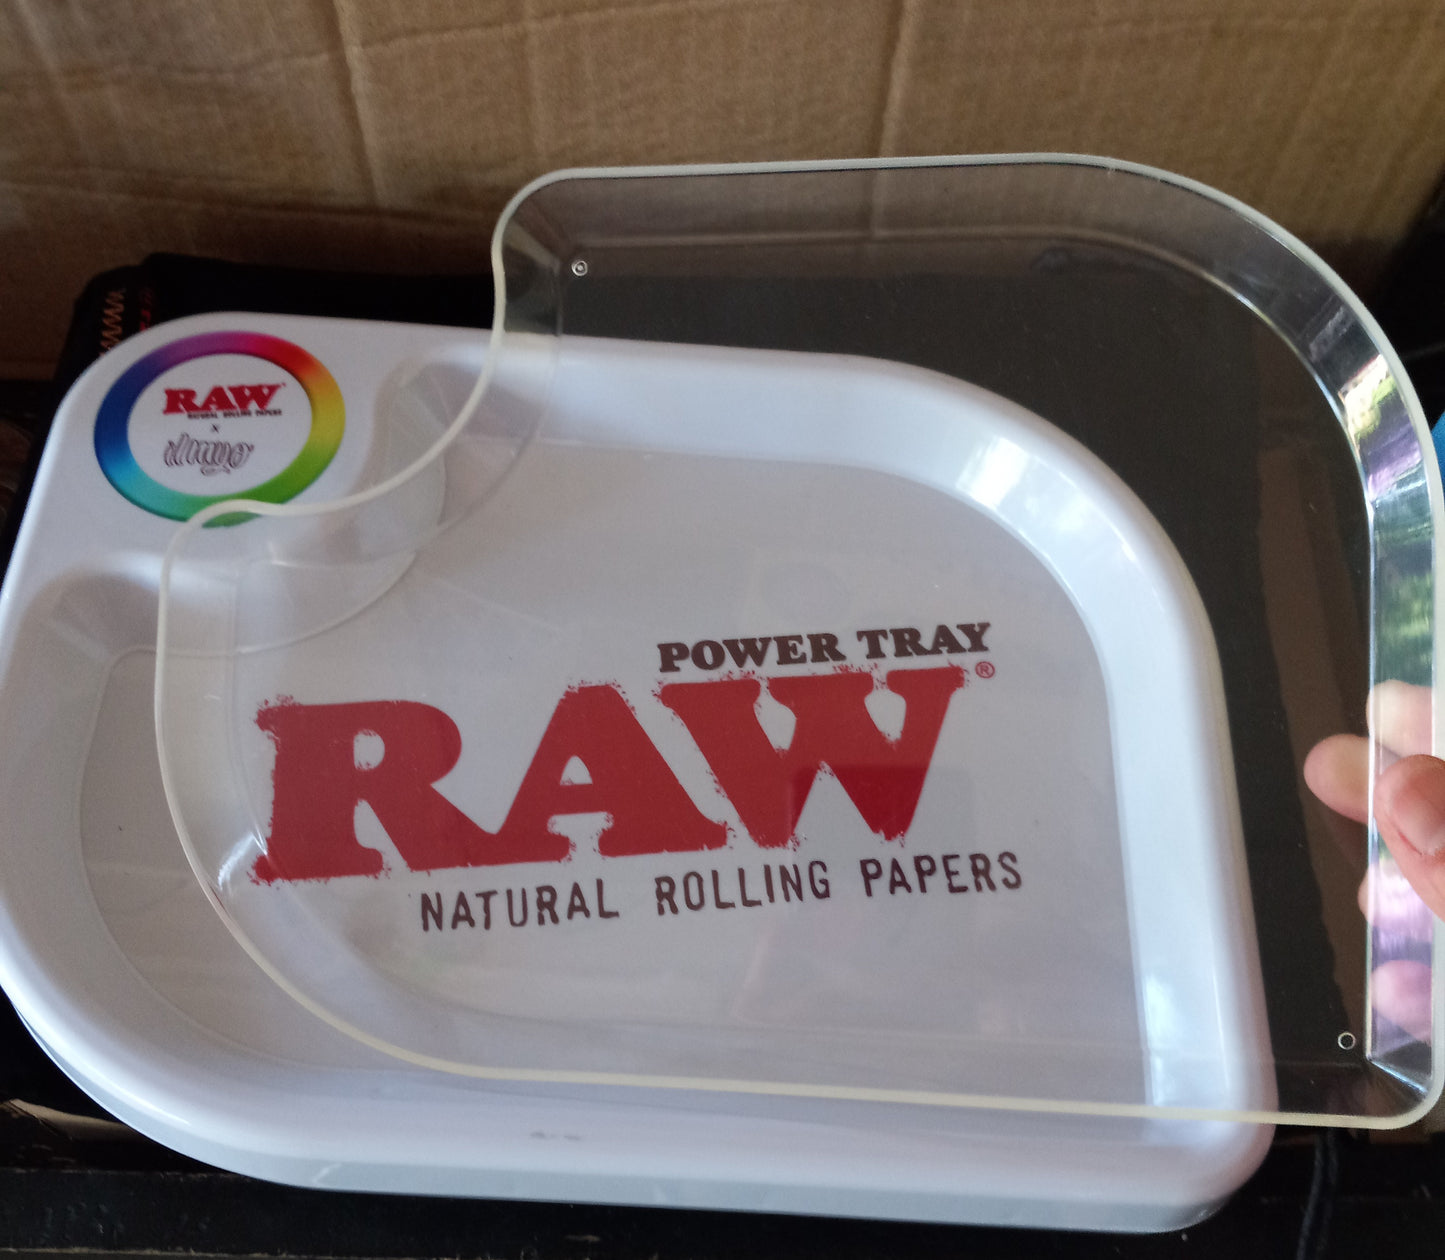 RAW Power Tray LED